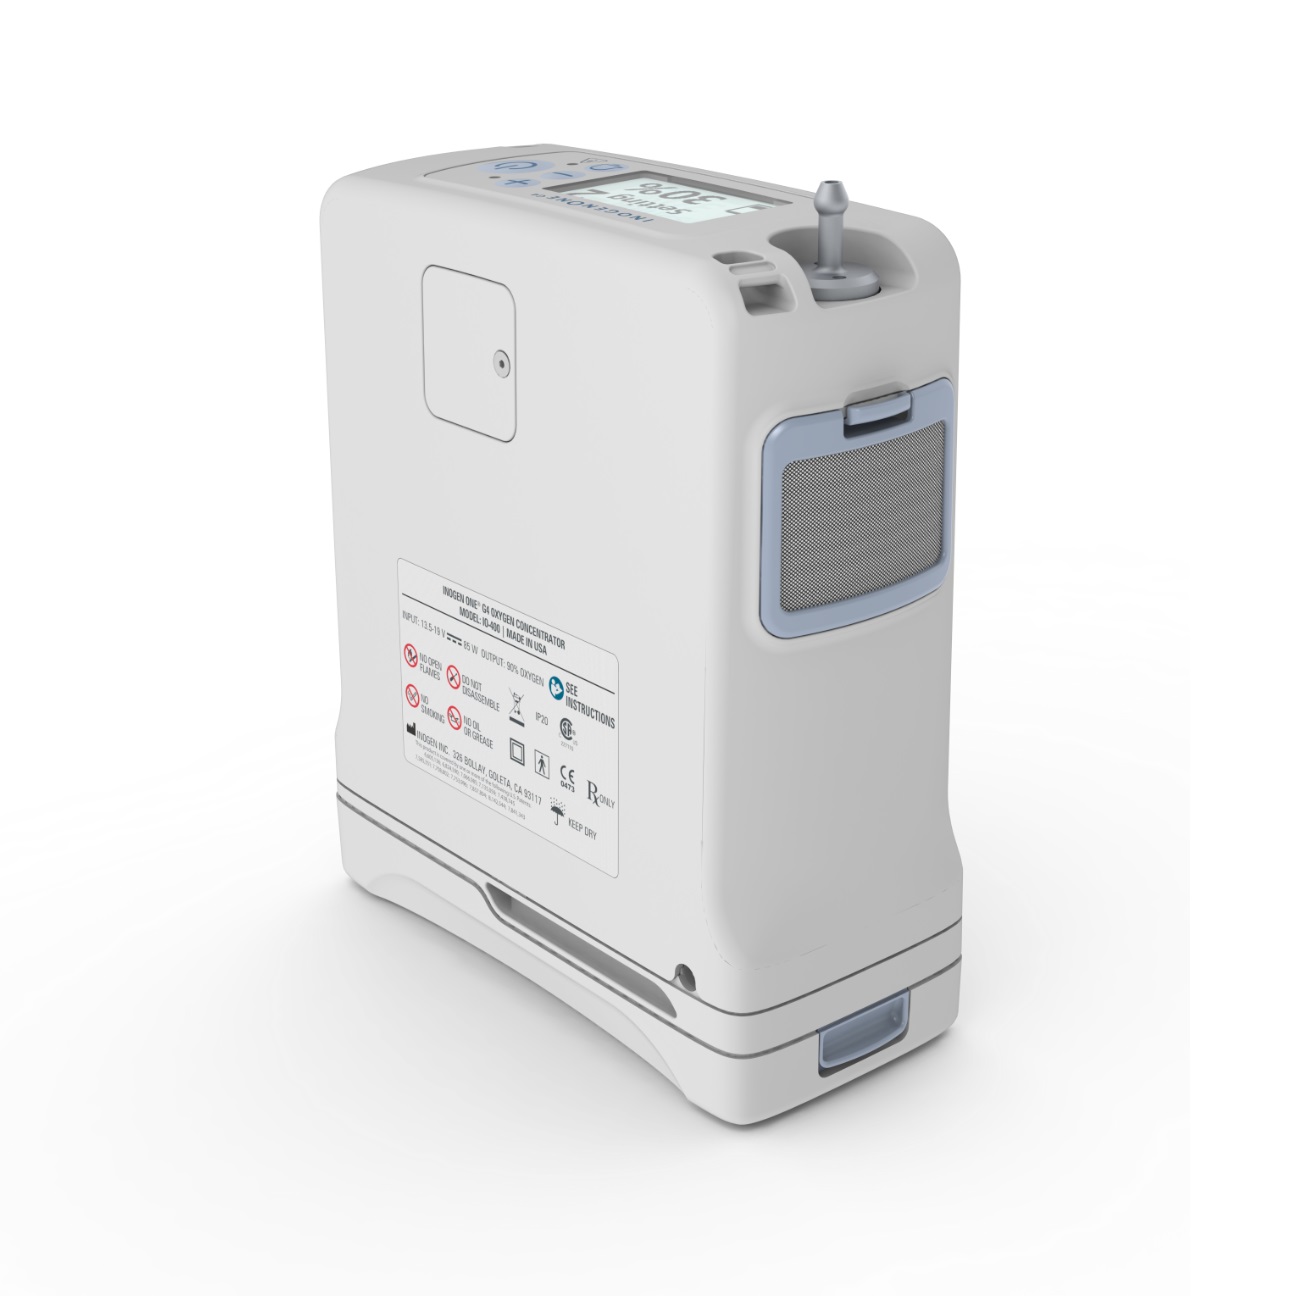 Sauerstoffkonzentrator tragbar und superleicht | Inogen One G4 | Sauerstoffproduktion 630 ml/min